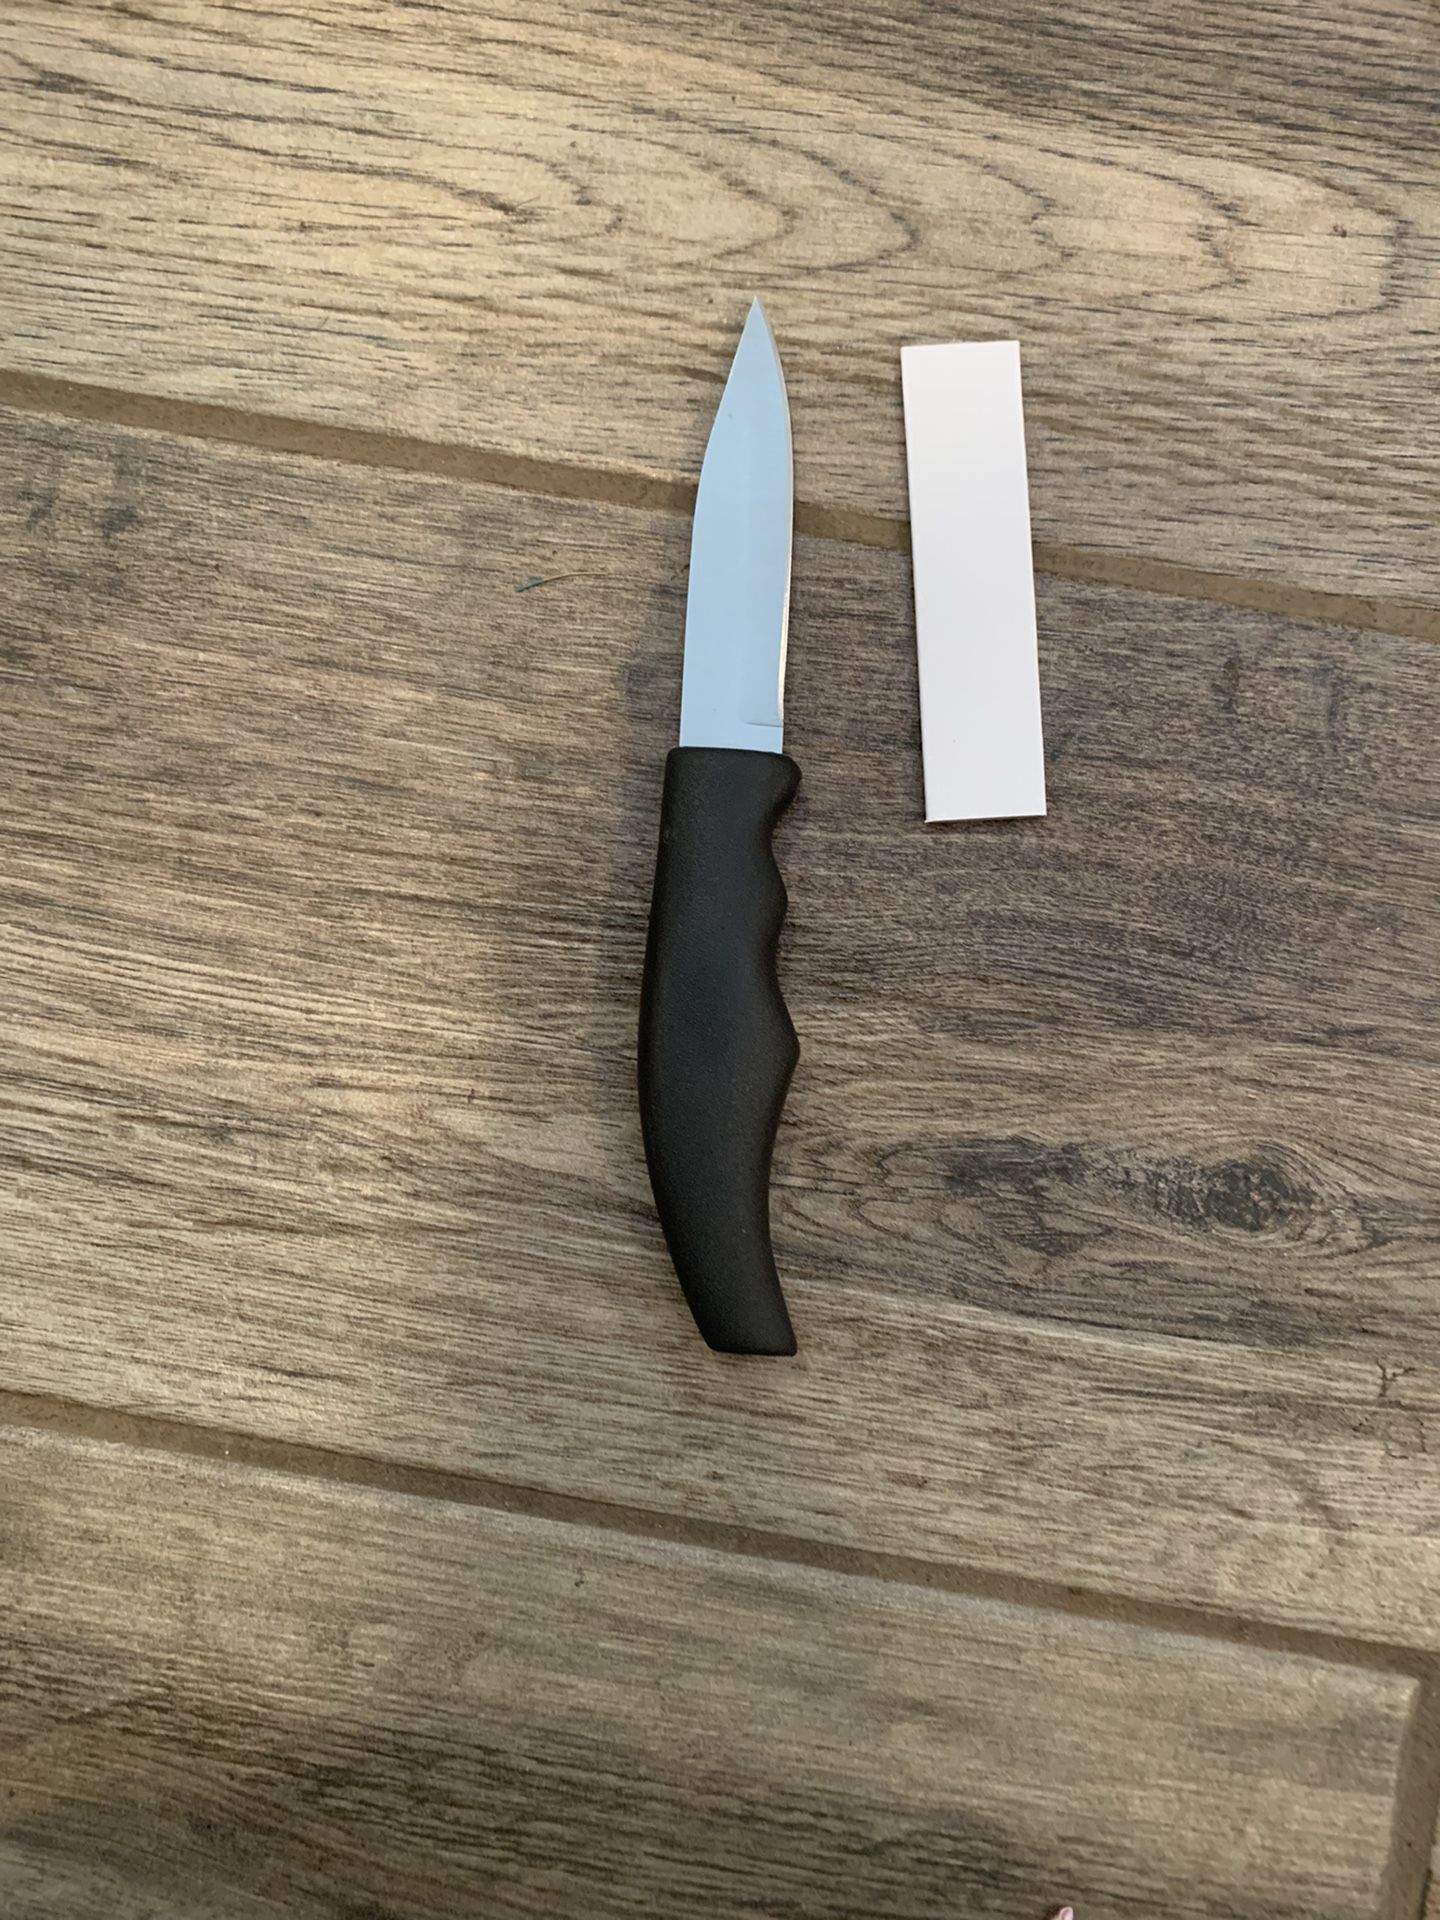 Forever Sharp- 8 TV knives (4 “Forever sharp” and 4 “Paring-pro